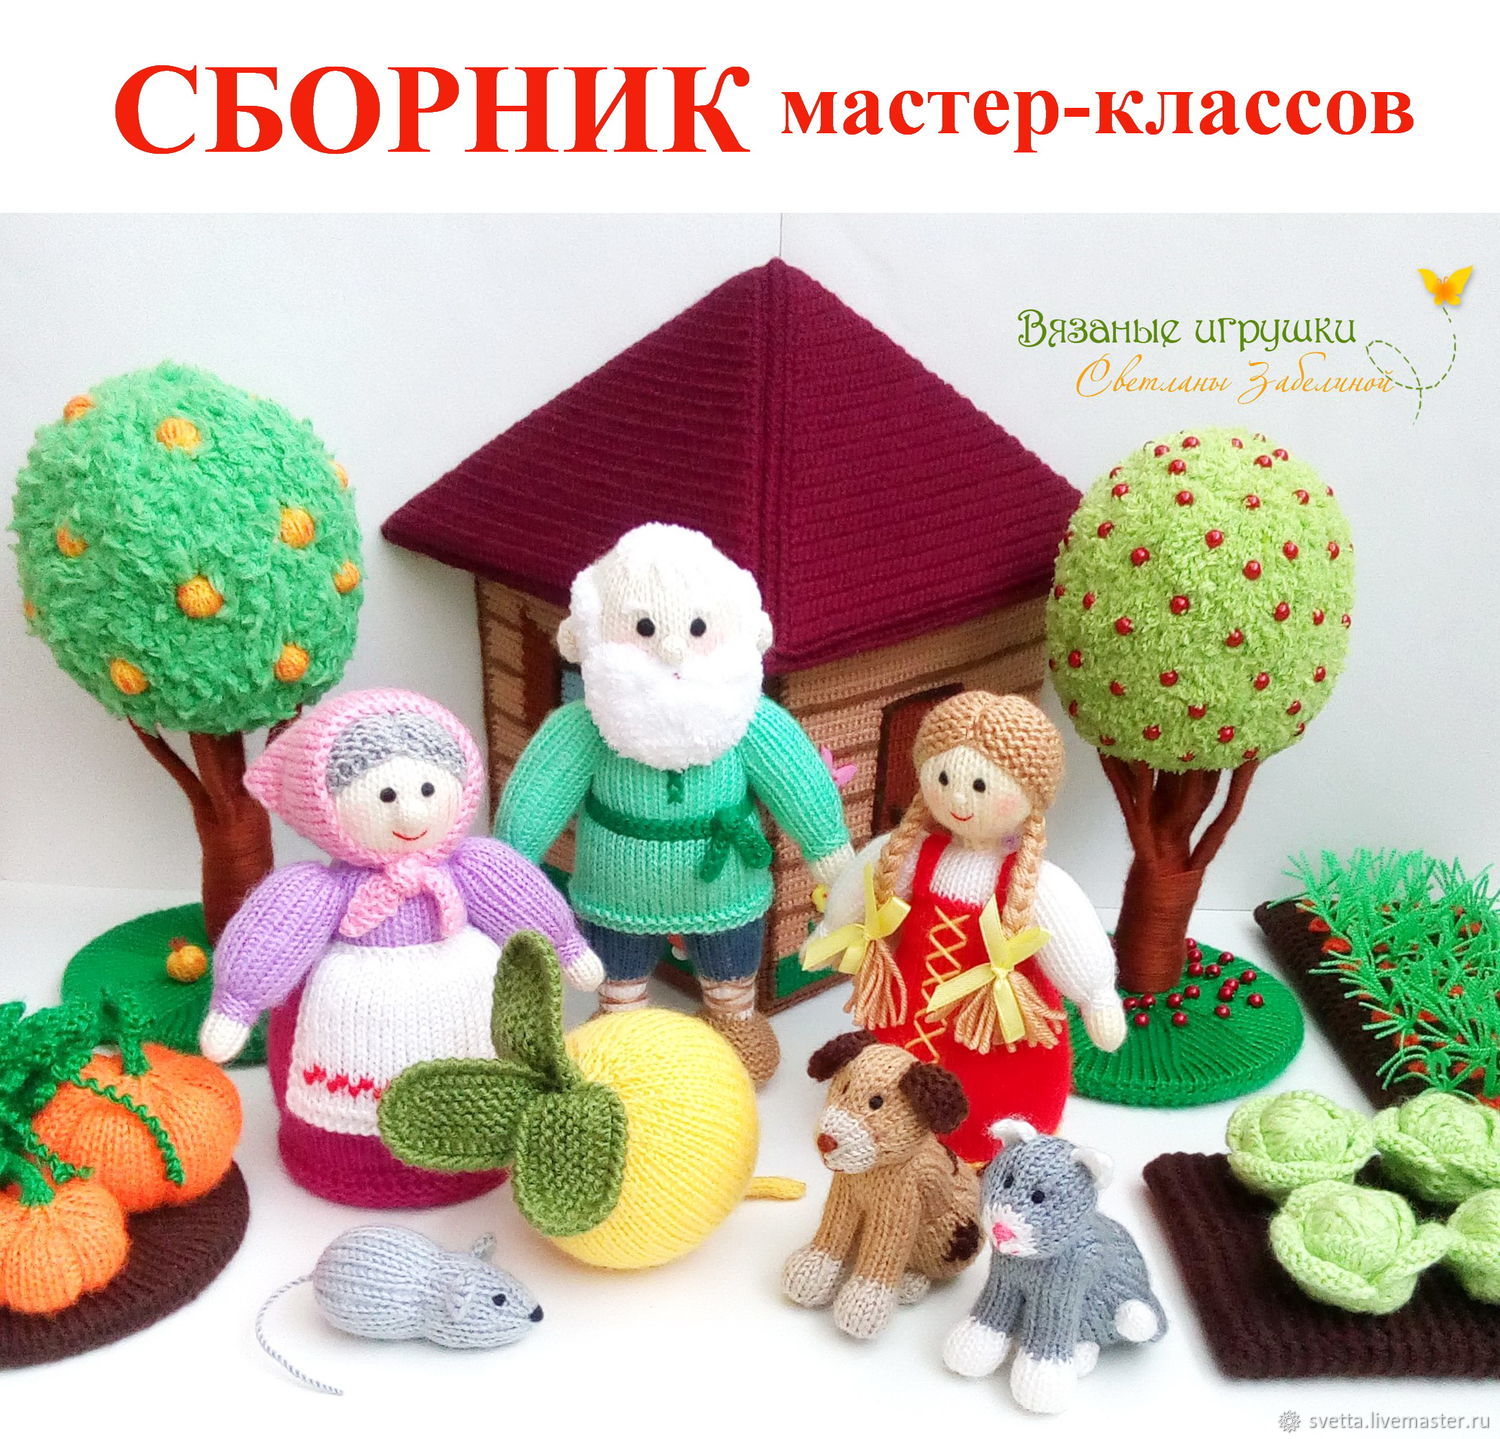 Купить ВЯЗАНЫЕ ИГРУШКИ ручной работы в Украине - DIPI - куклы, животные, герои сказок